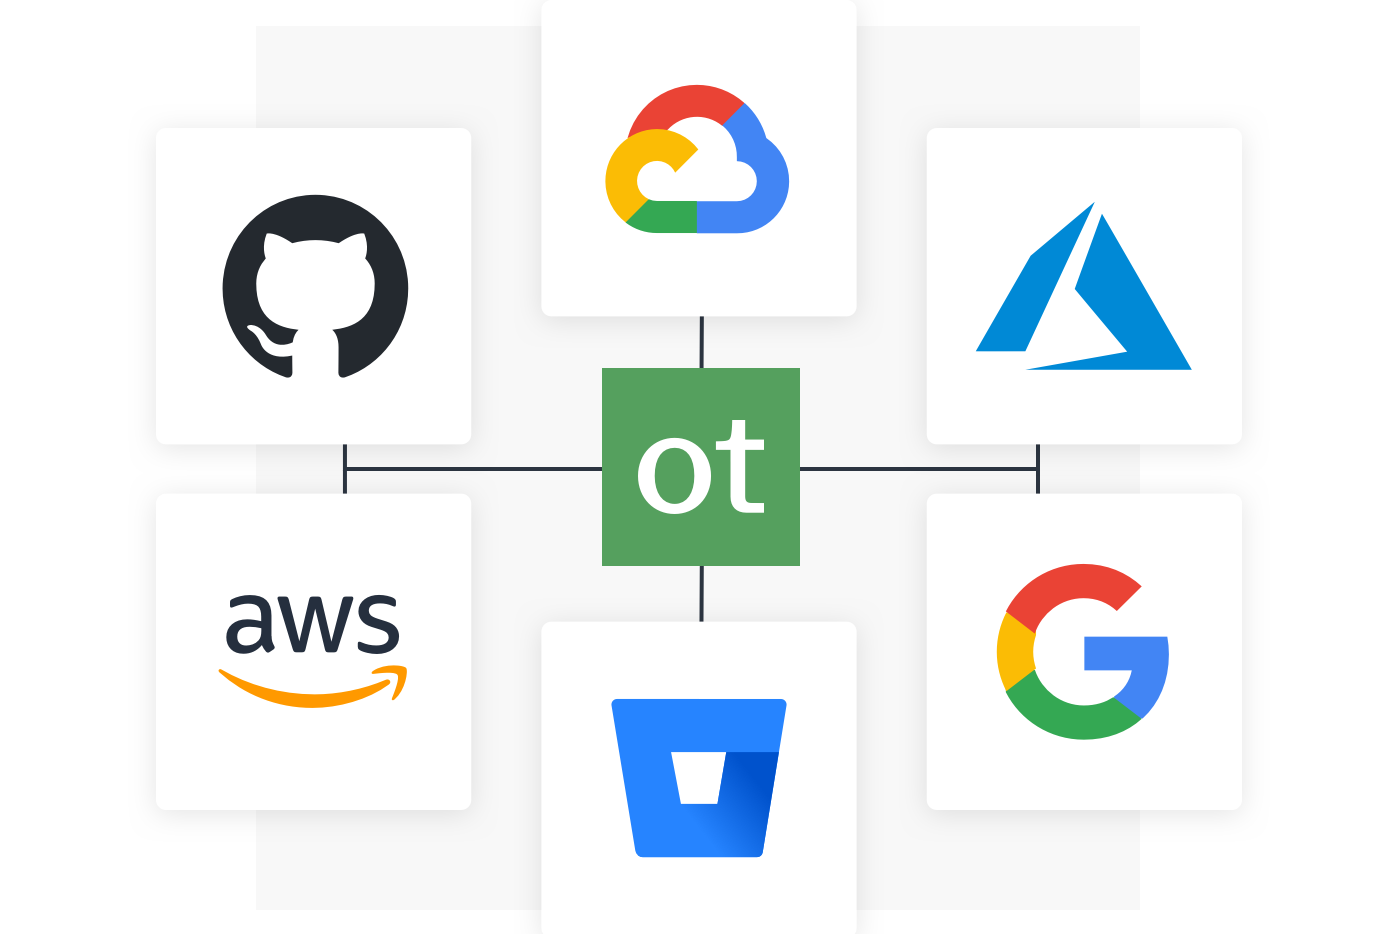 科技标志公司围绕OneTrust形成了一个网络。logo包括GitHub、AWS、Azure、谷歌和Atlassian。